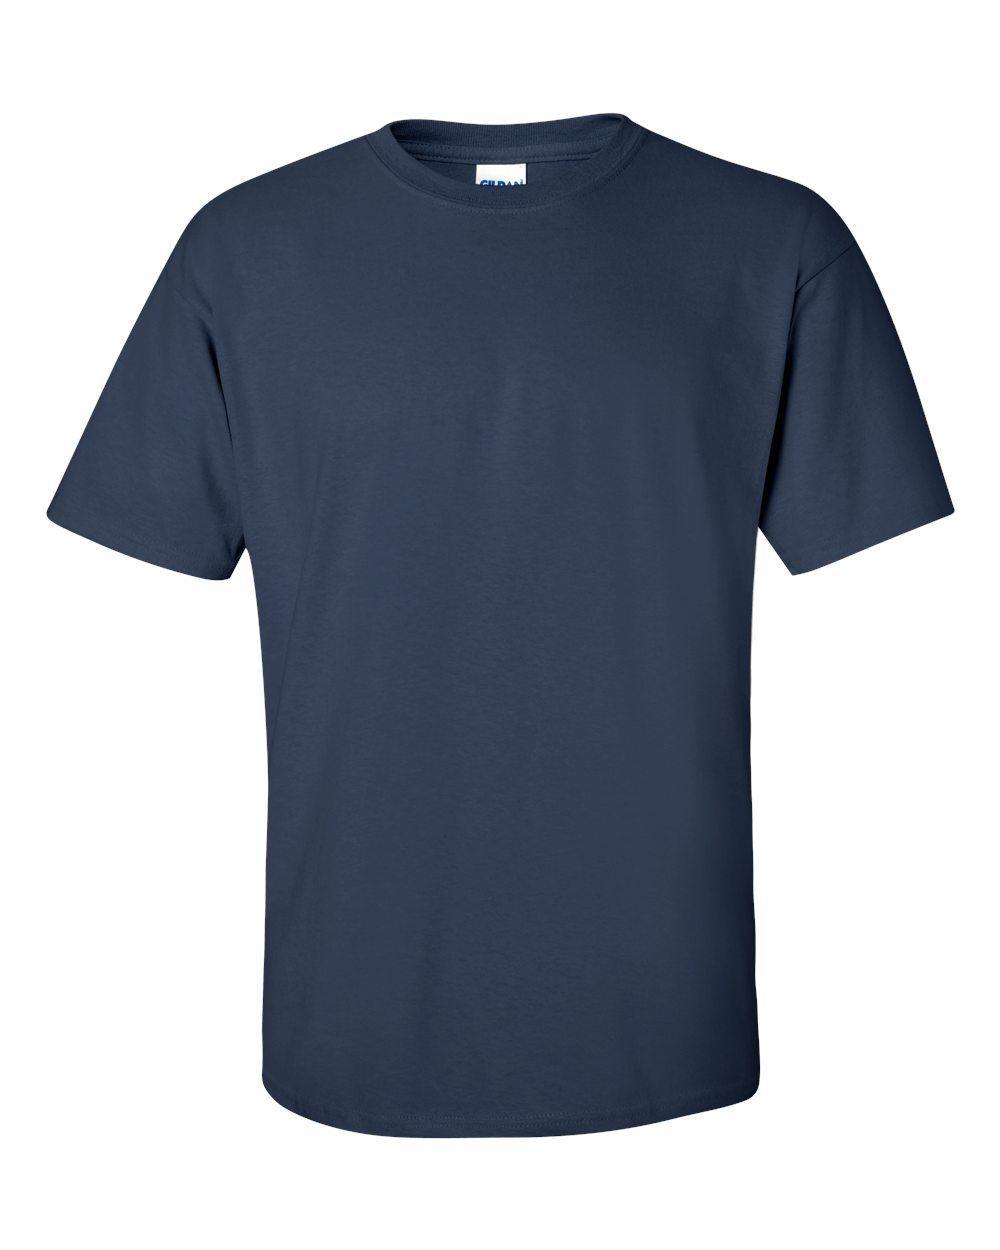 Plain T Shirt Brands